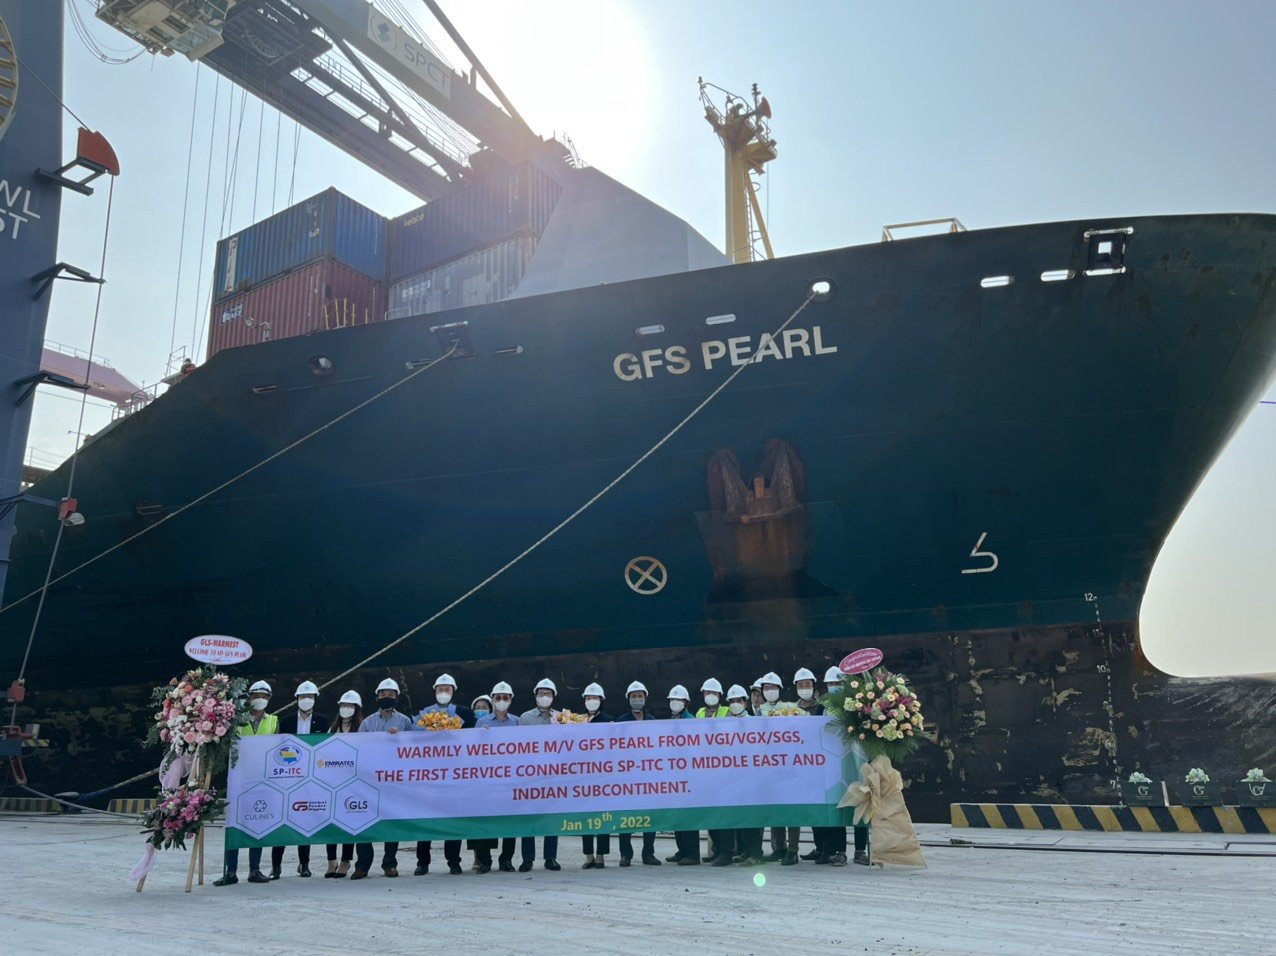 Đại diện ba hãng tàu ESL, CU Lines và GLS (đại lý của GFS) chào mừng tàu GFS Pearl cập cảng